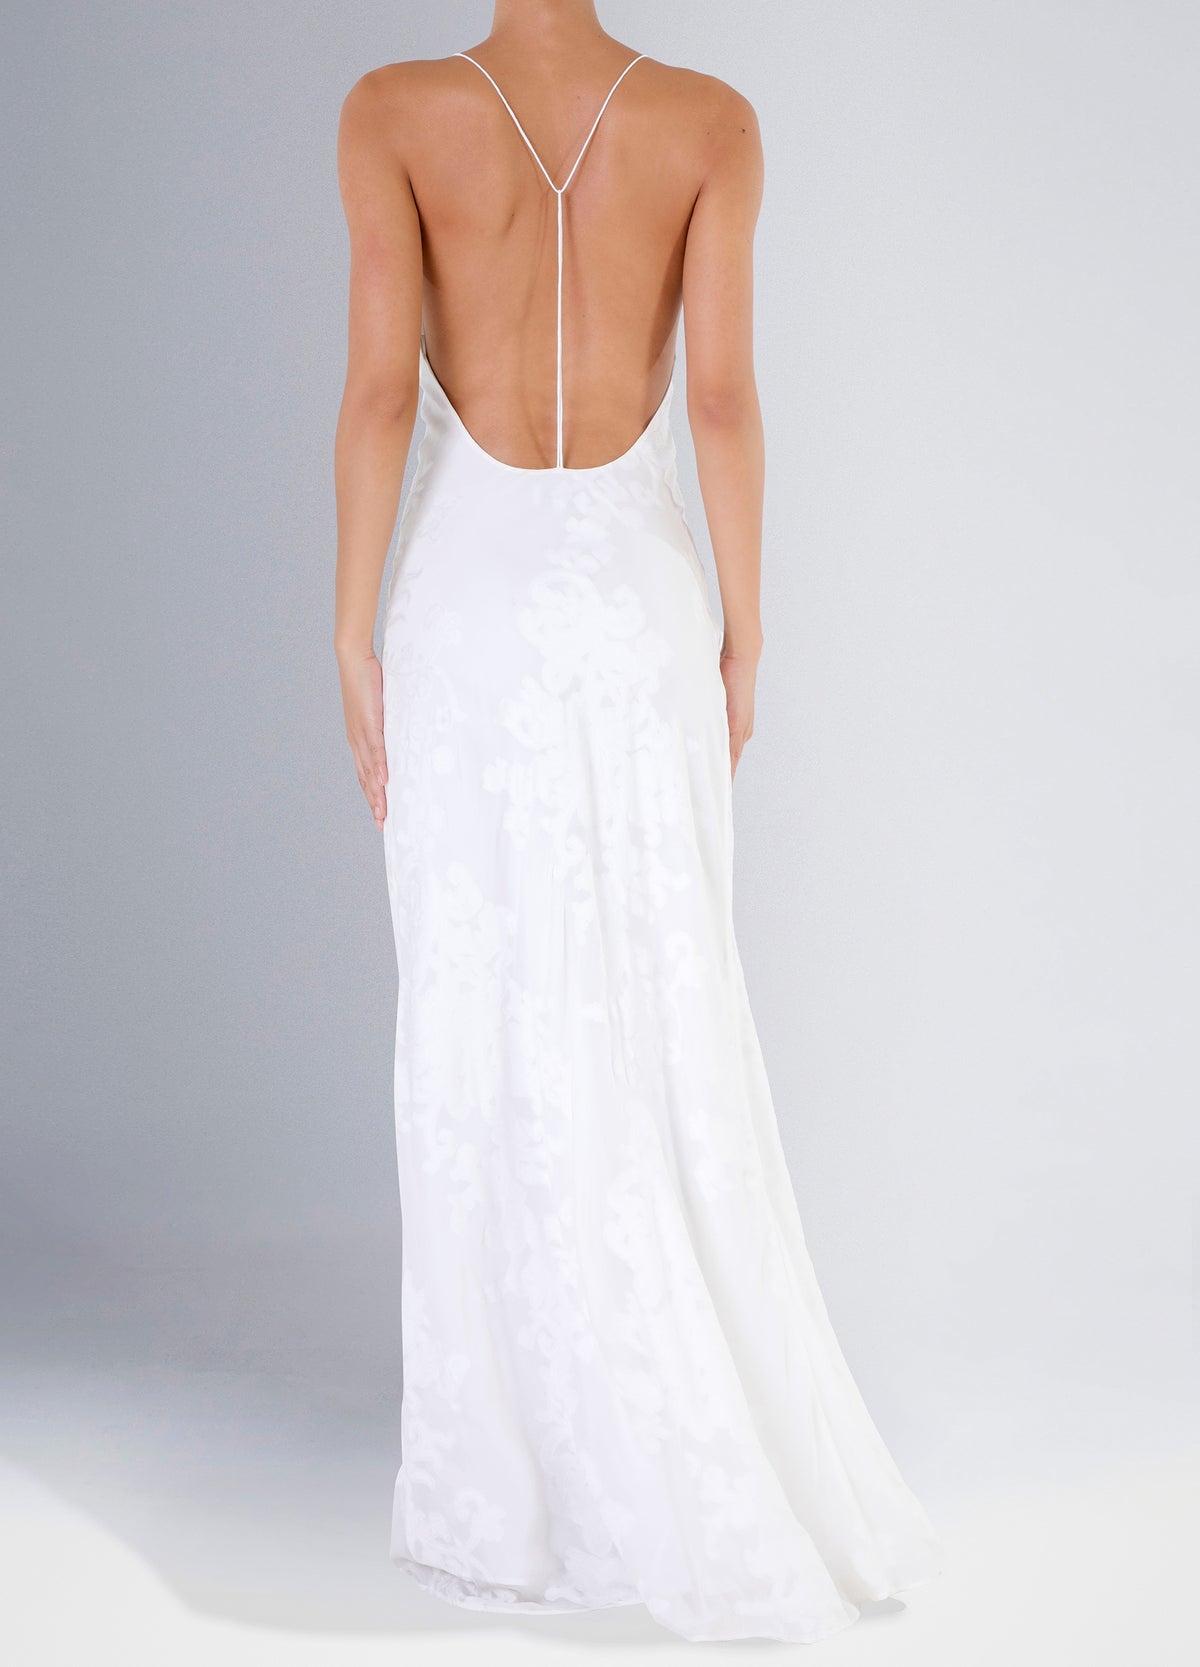 Yilei Dress - White Flowers on white